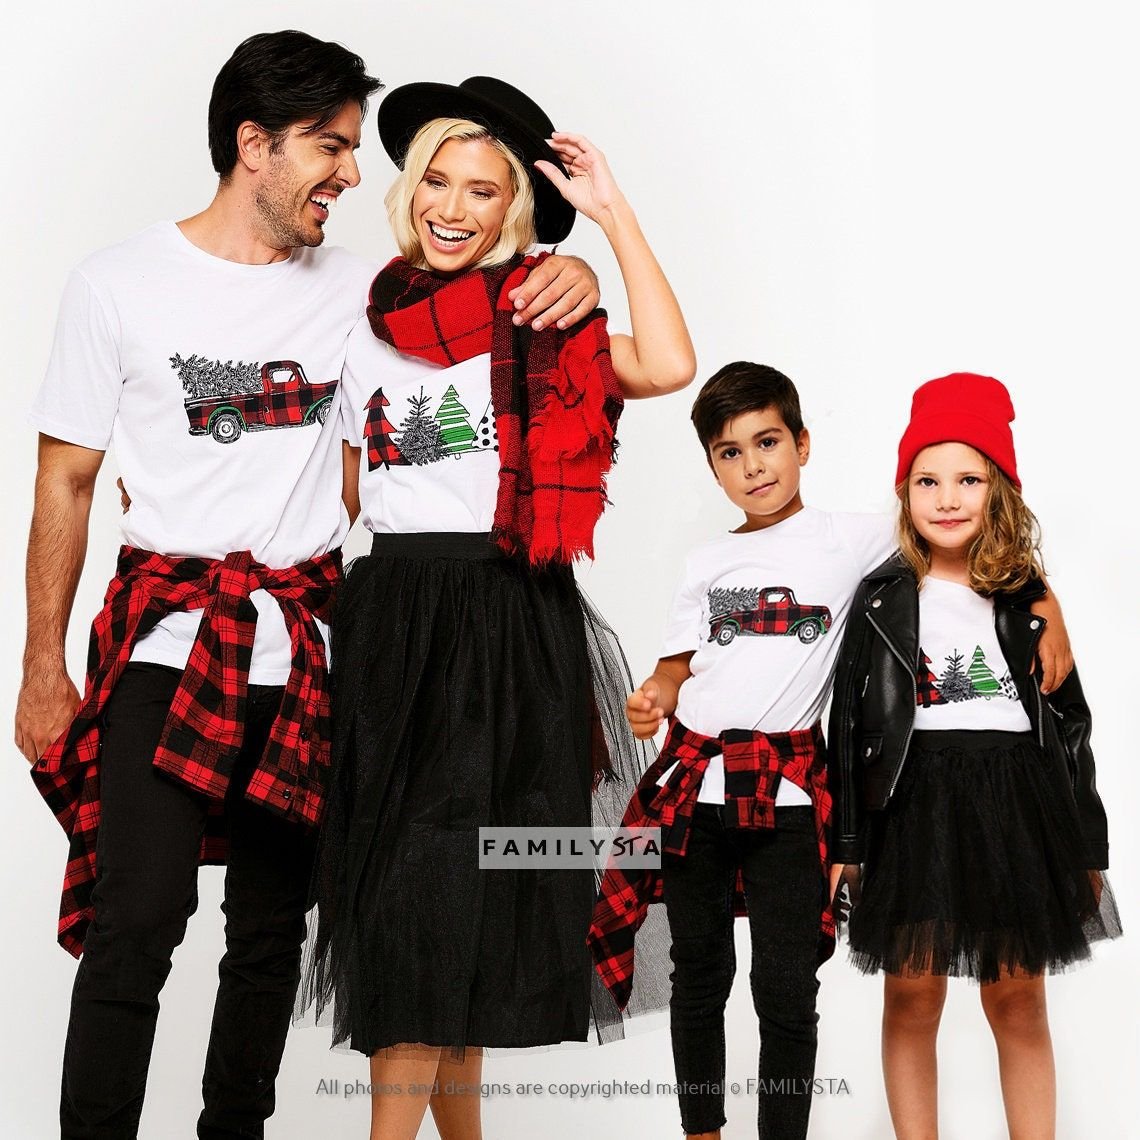 Christmas Family Shirts, Christmas Shirts, Matching Holiday Shirts, Christmas Family Tshirts, Christmas Tees, Matching Outfit,Family Tshirts.jpg